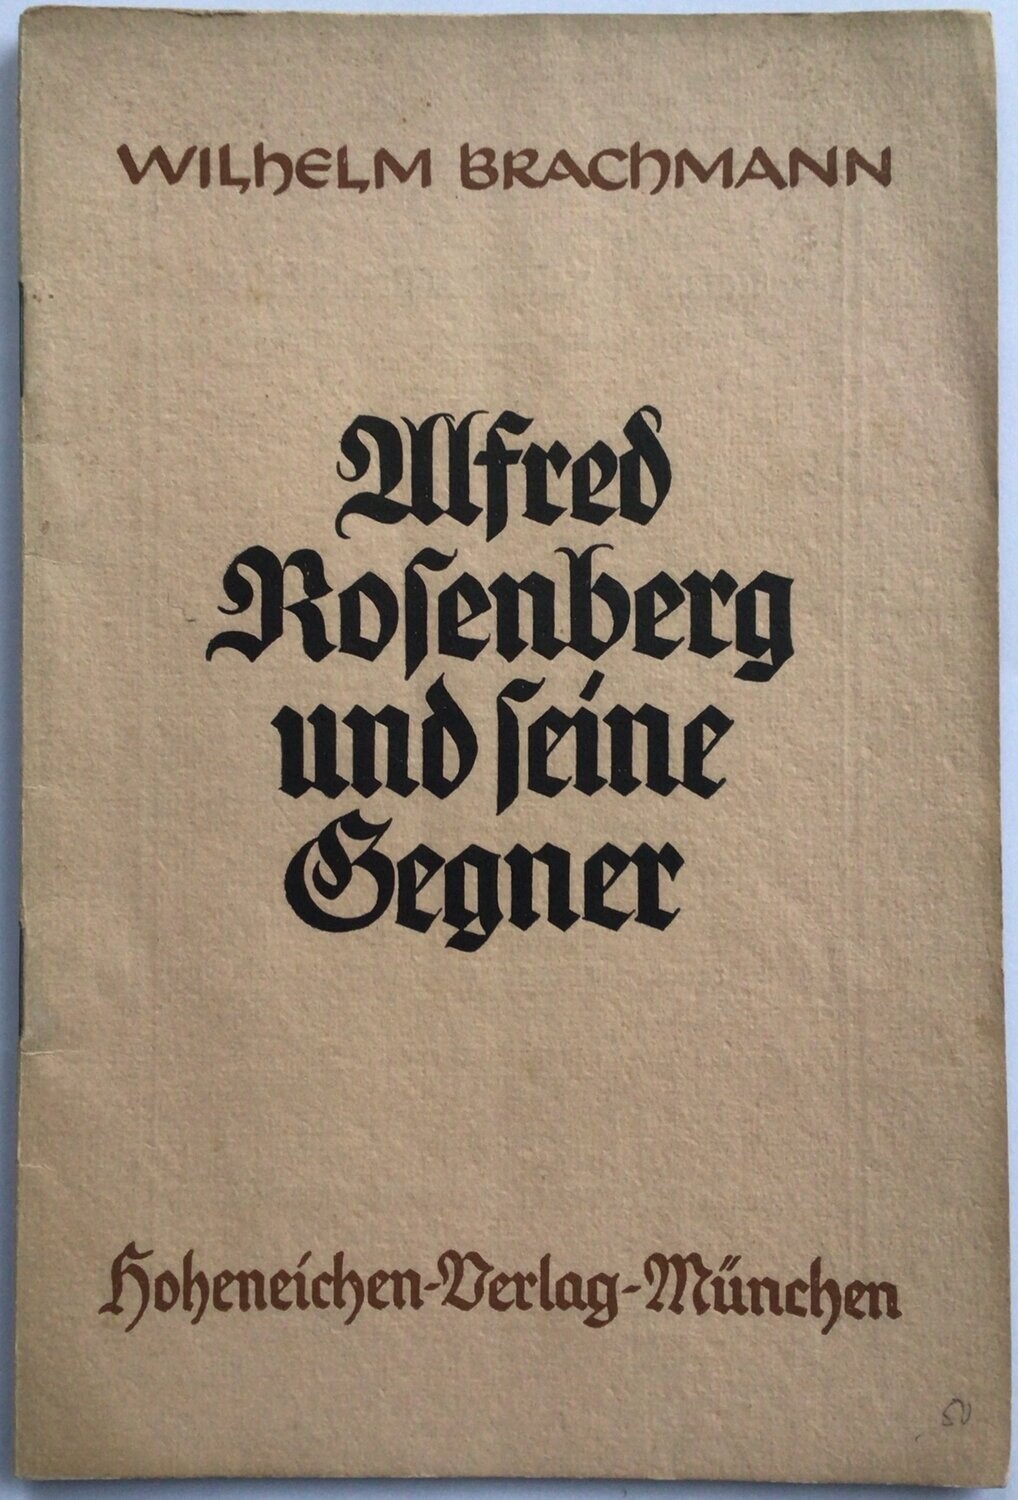 Brachmann: Alfred Rosenberg und seine Gegner - Broschierte Ausgabe aus 1938